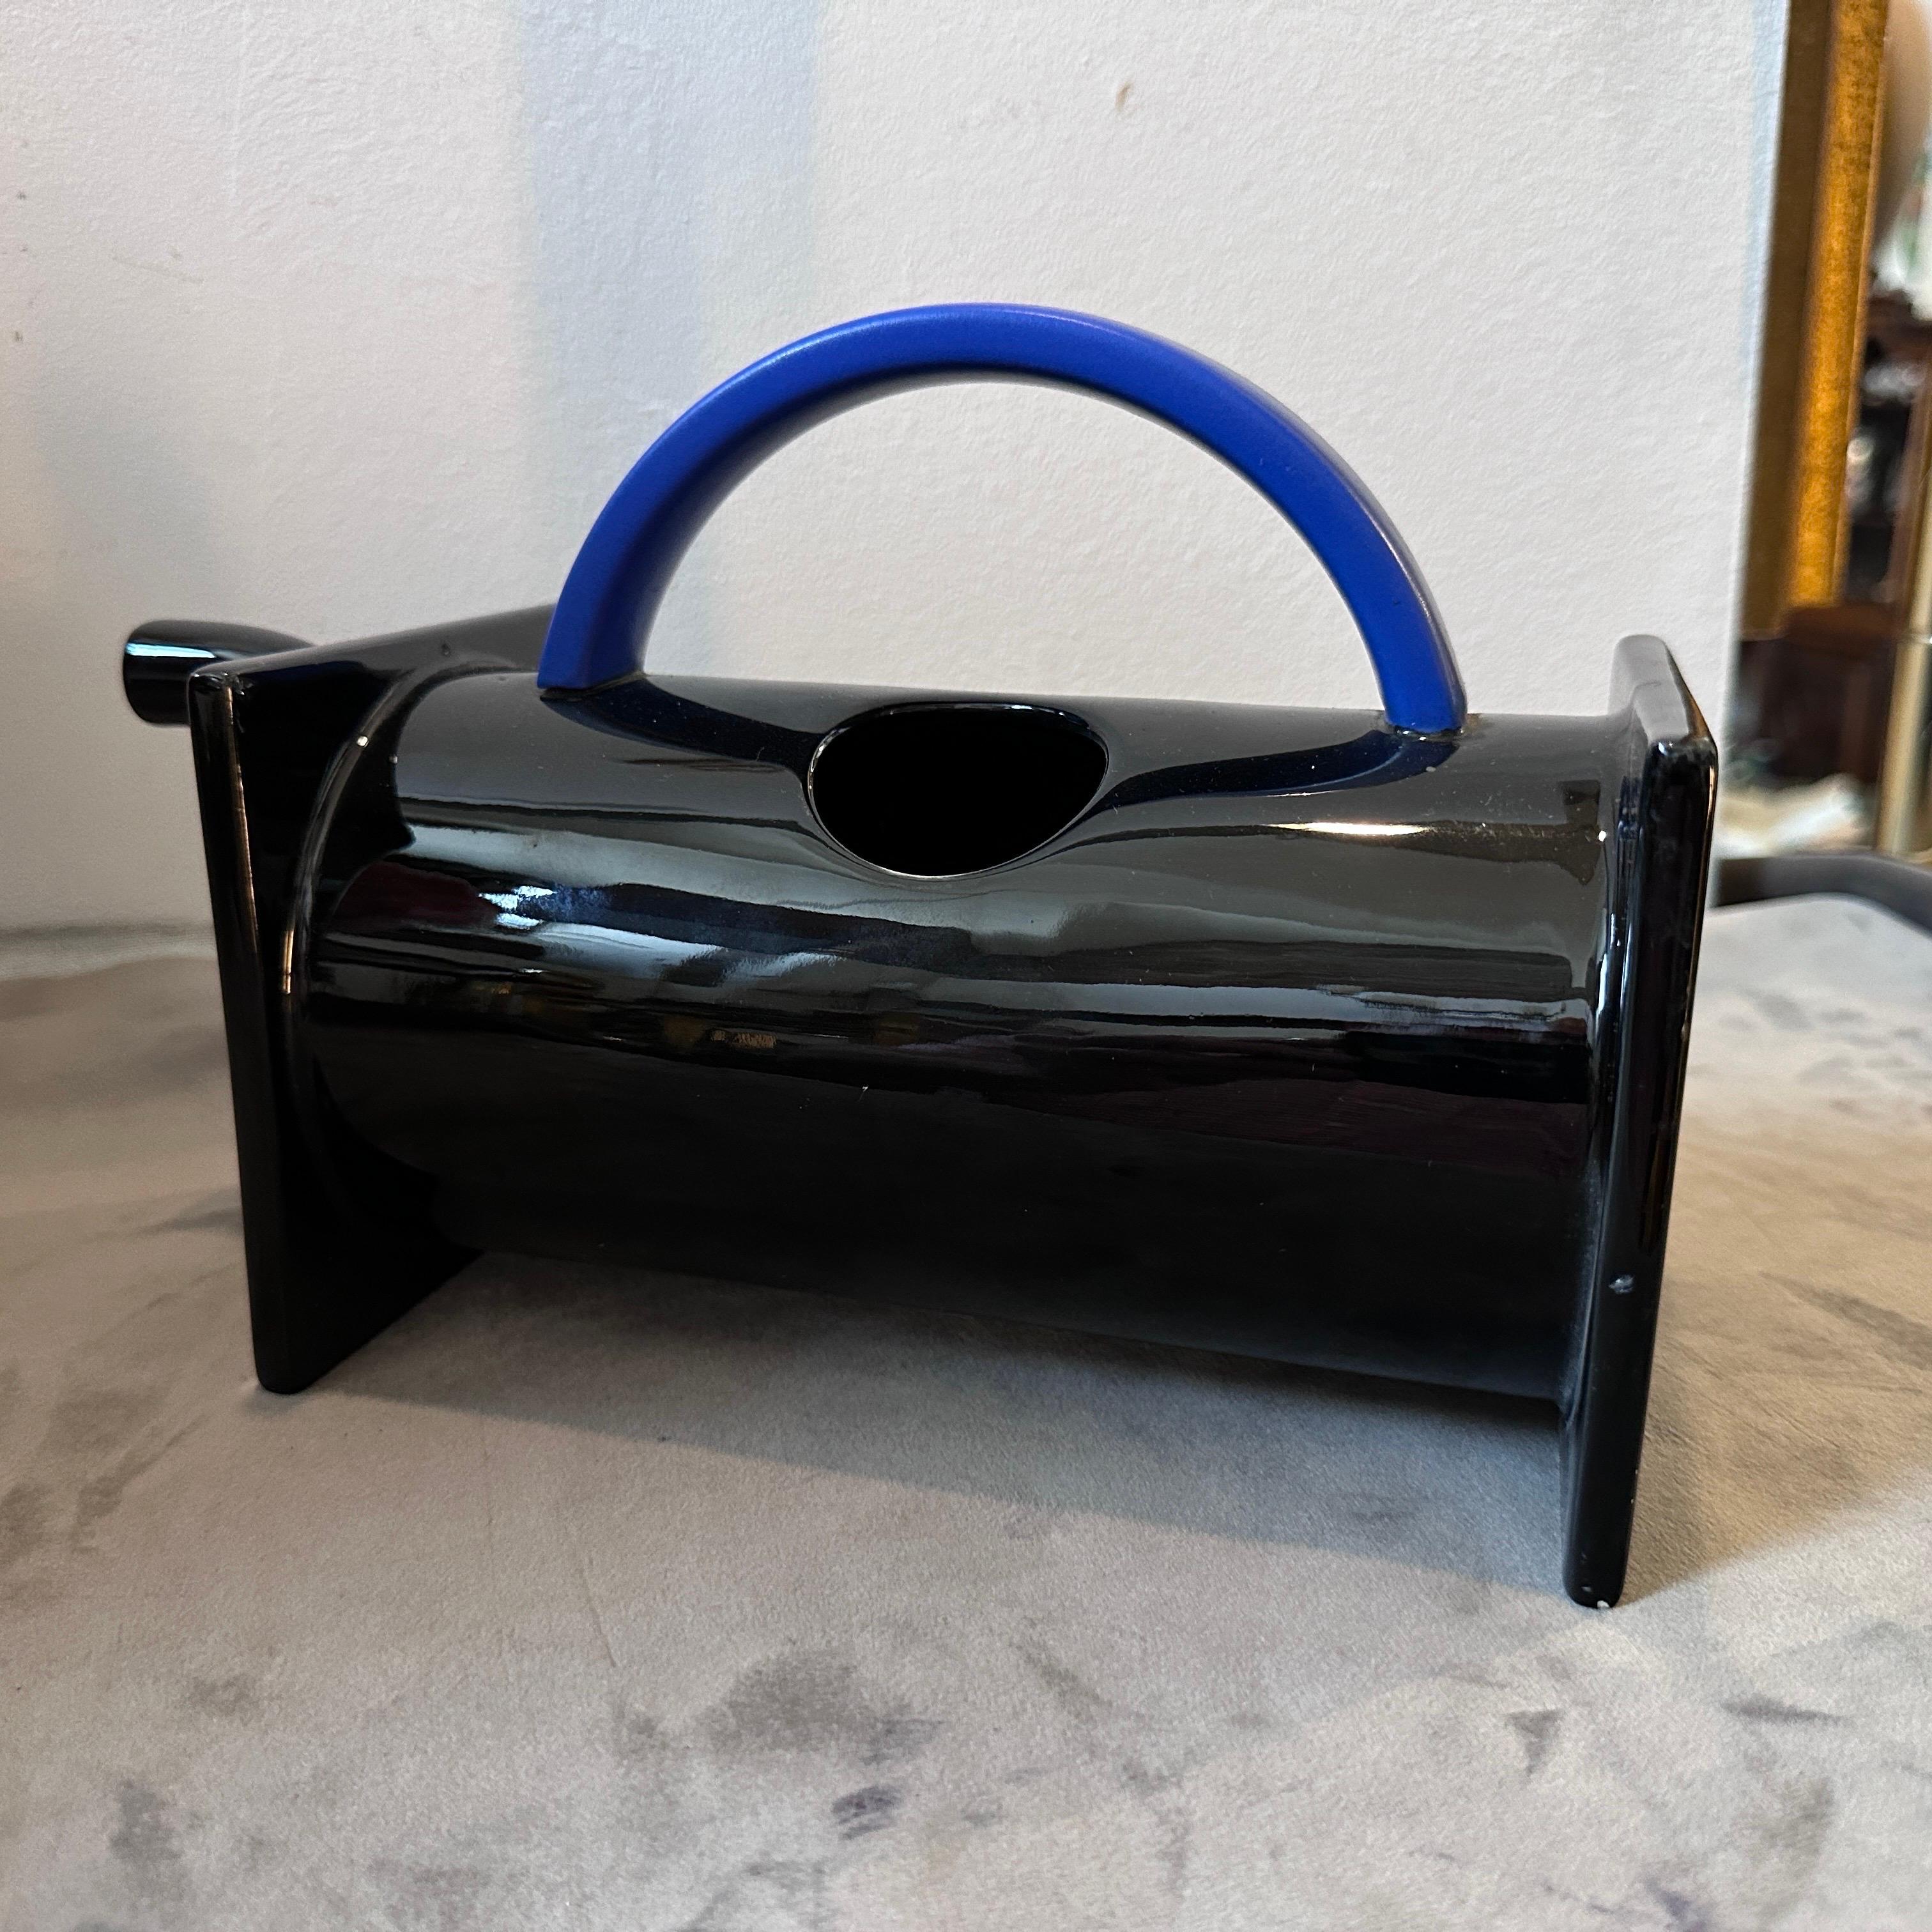 Une théière en céramique noire et bleue de Memphis Milano conçue par Marco Zanini pour Bitossi en parfait état. La théière de Marco Zanini est une œuvre d'art fonctionnelle étonnante. Elle incarne le style emblématique du groupe Memphis, connu pour